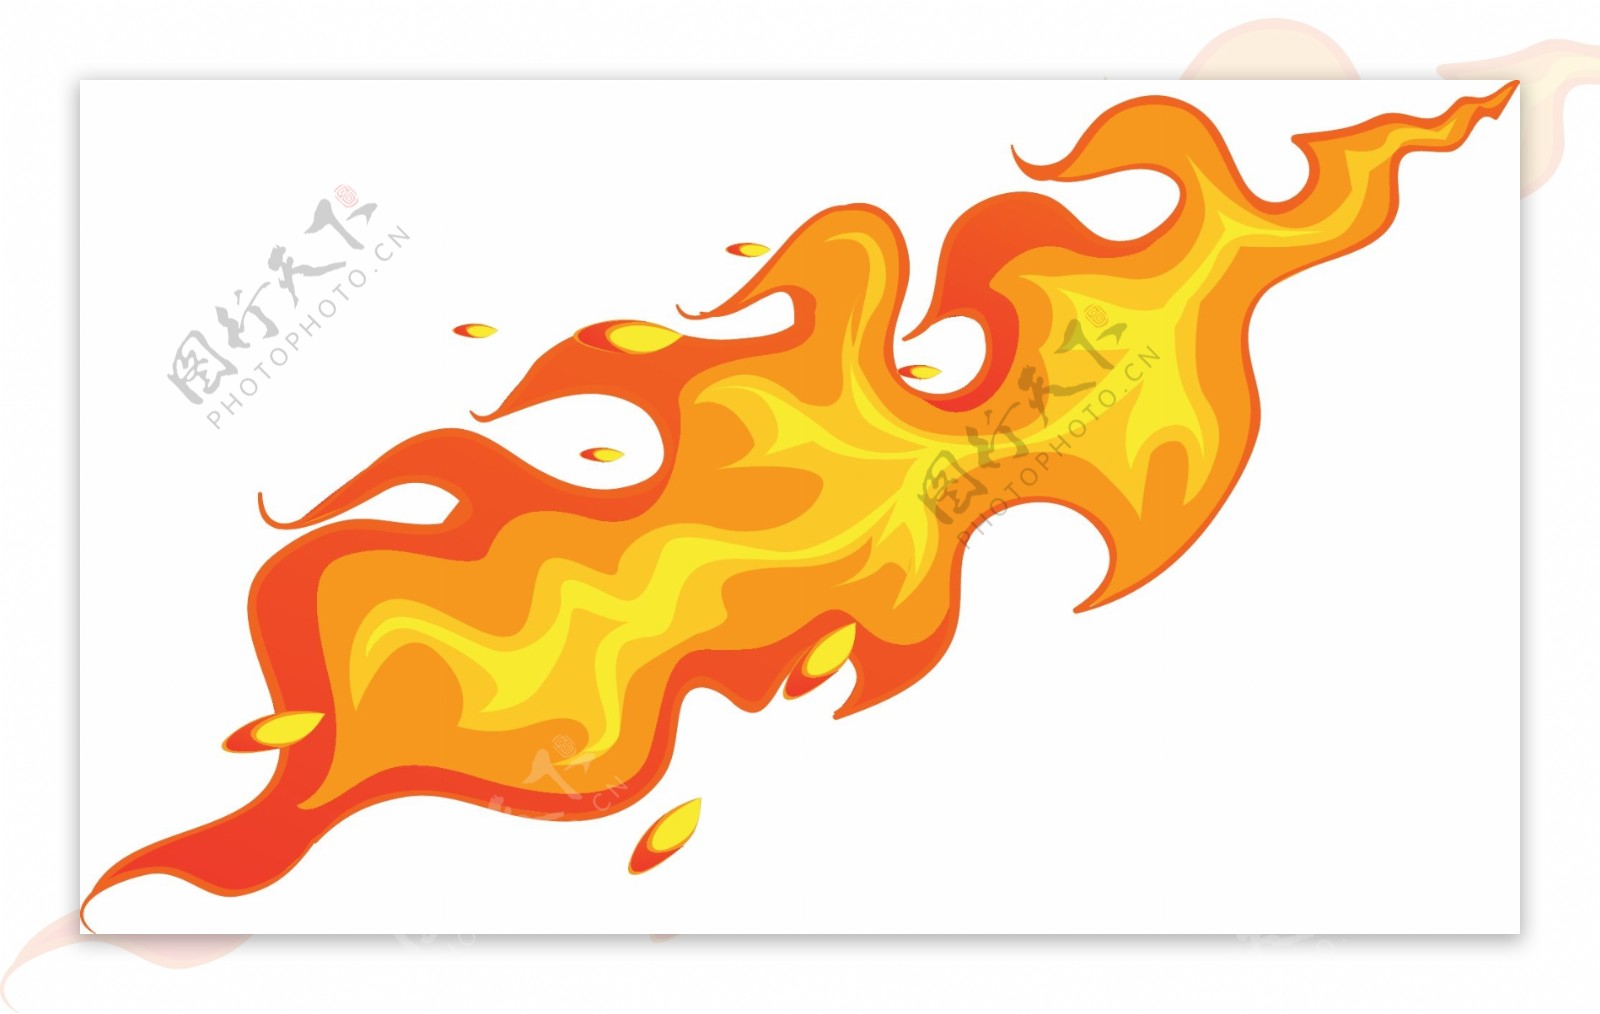 燃燒的火PNG圖案素材免費下載 - 尺寸2000 × 2000px - 圖形ID400918448 - Lovepik